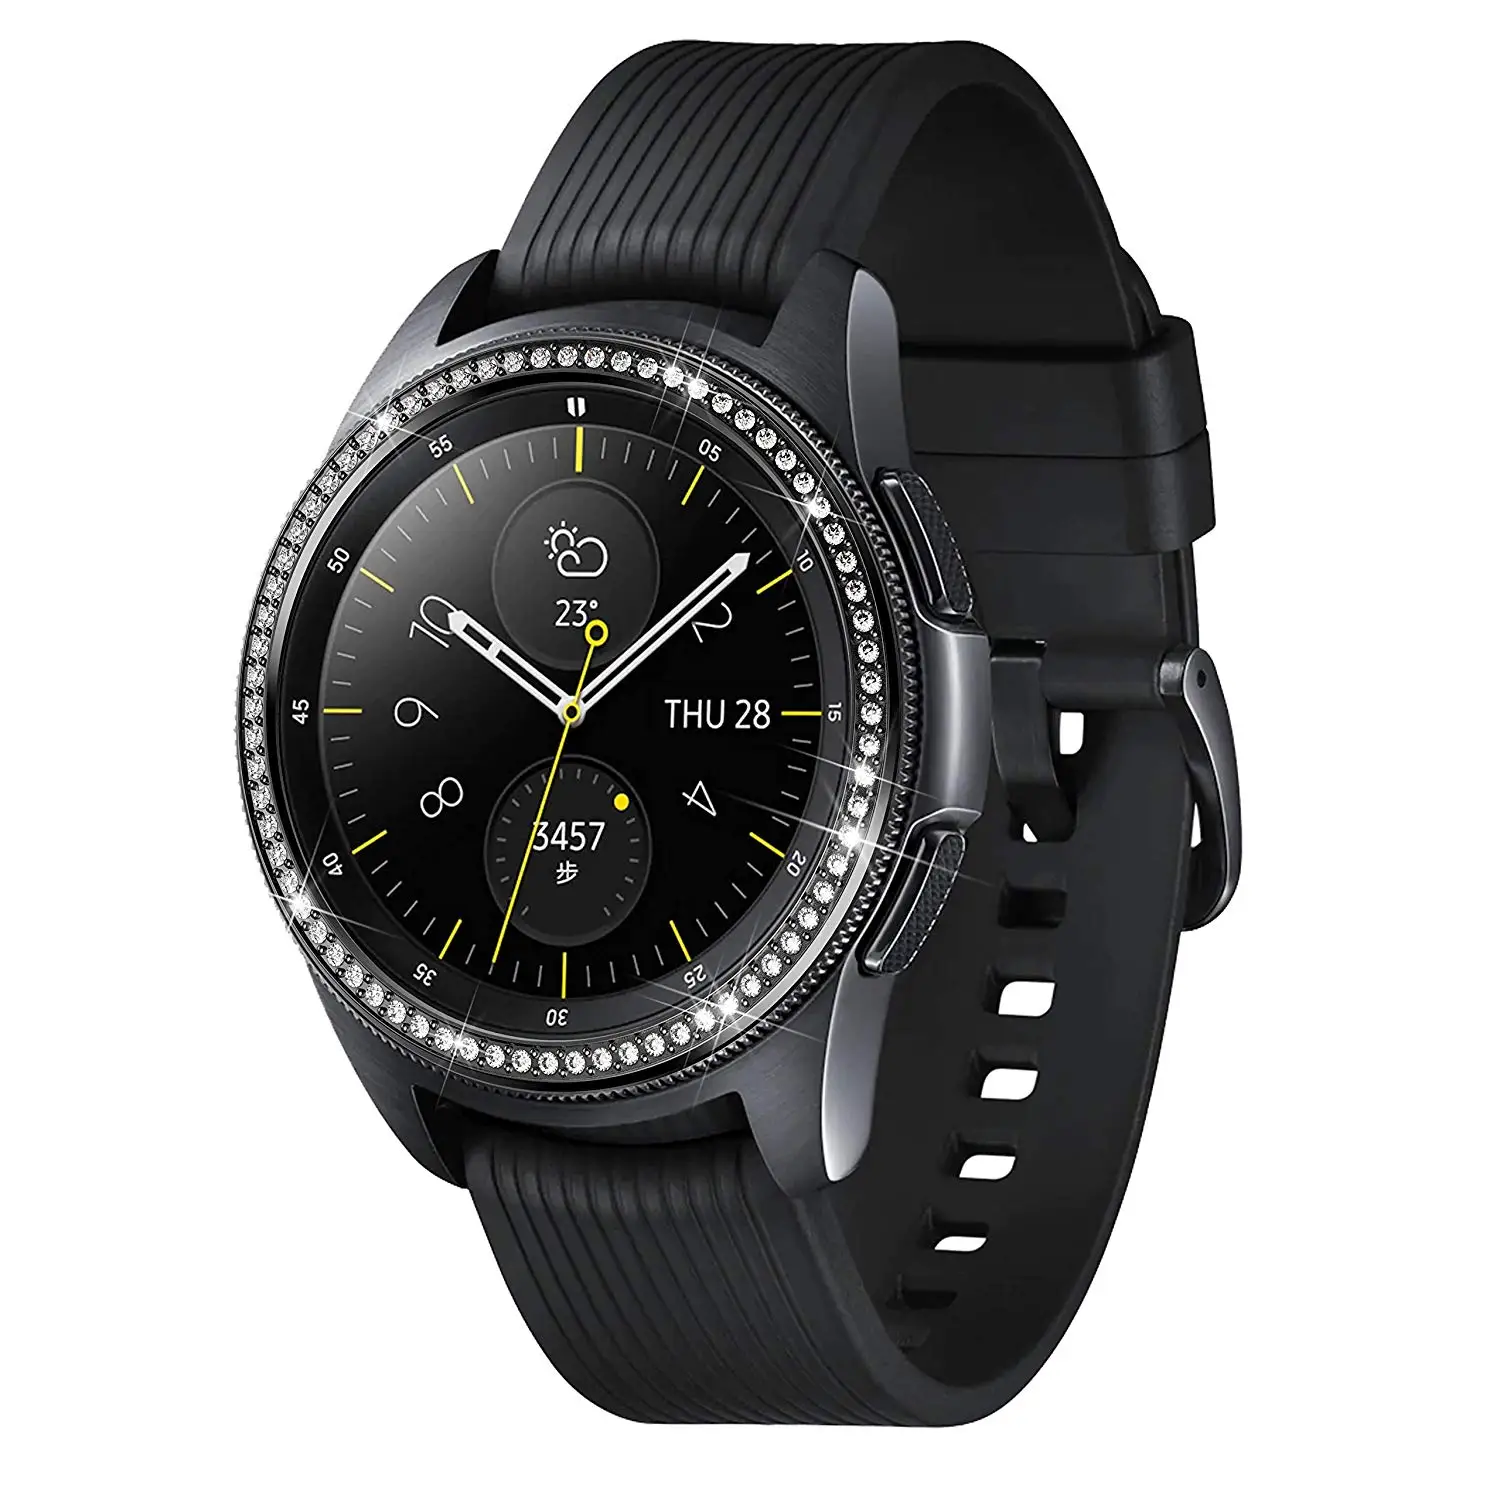 Бриллиантовая оправа кольцо для samsung Galaxy Watch 42 мм 46 мм металлический ободок кольцо клеющаяся крышка чехол для samsung gear S3 Classic/Frontier - Цвет: Black